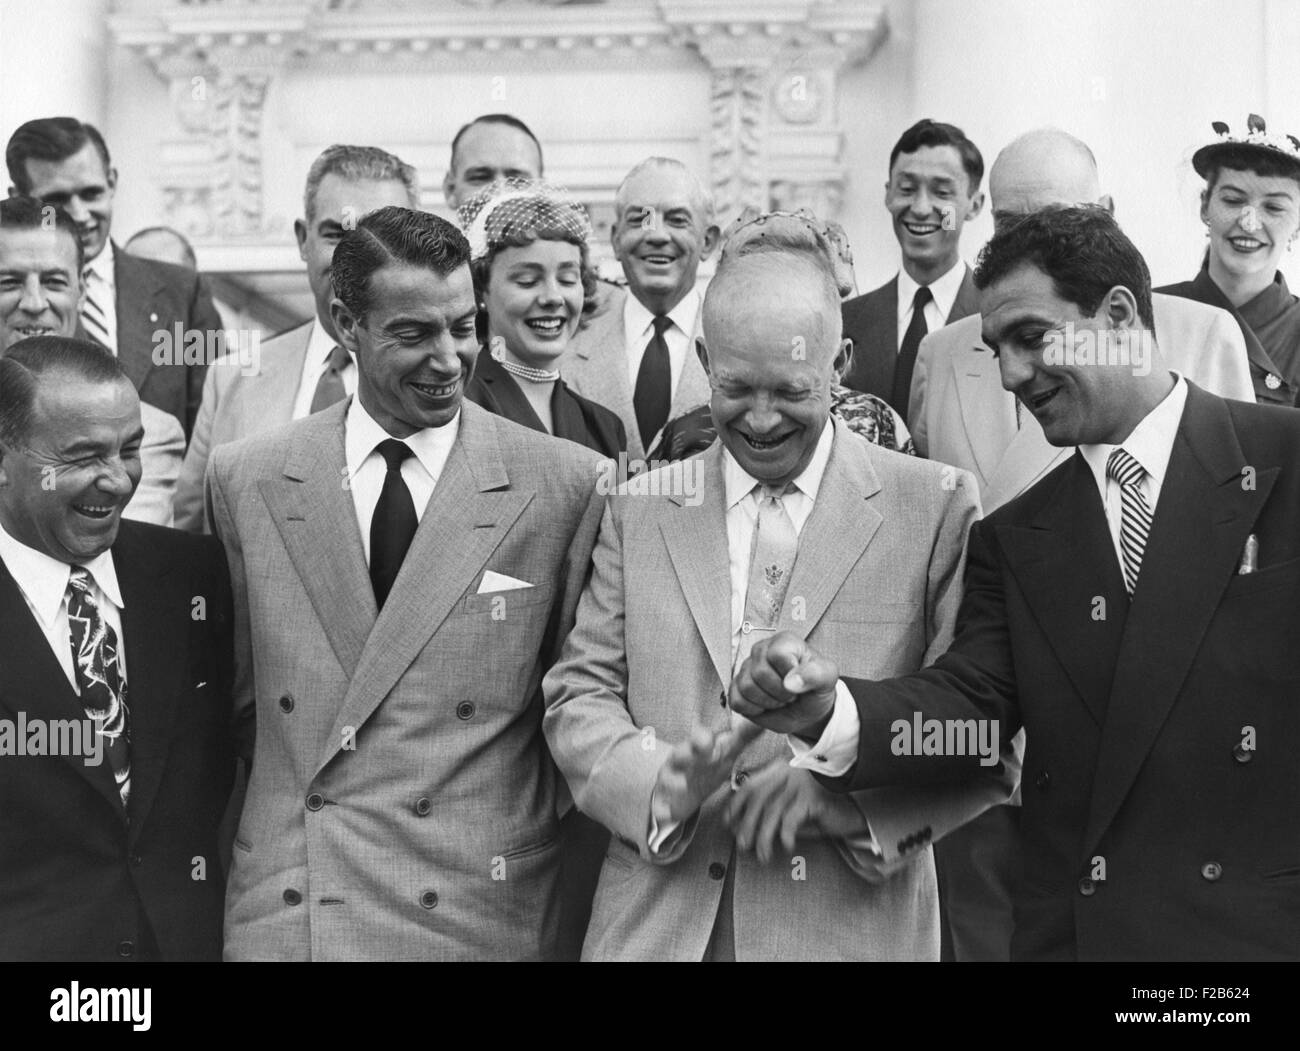 Le président Eisenhower avec baseball grand Joe DiMaggio, et le champion de boxe, Rocky Marciano. Le 6 juin 1953. Ils étaient parmi les 45 sports champions invités à assister à la partie de baseball du Congrès. - BSLOC  2014 (16 170) Banque D'Images